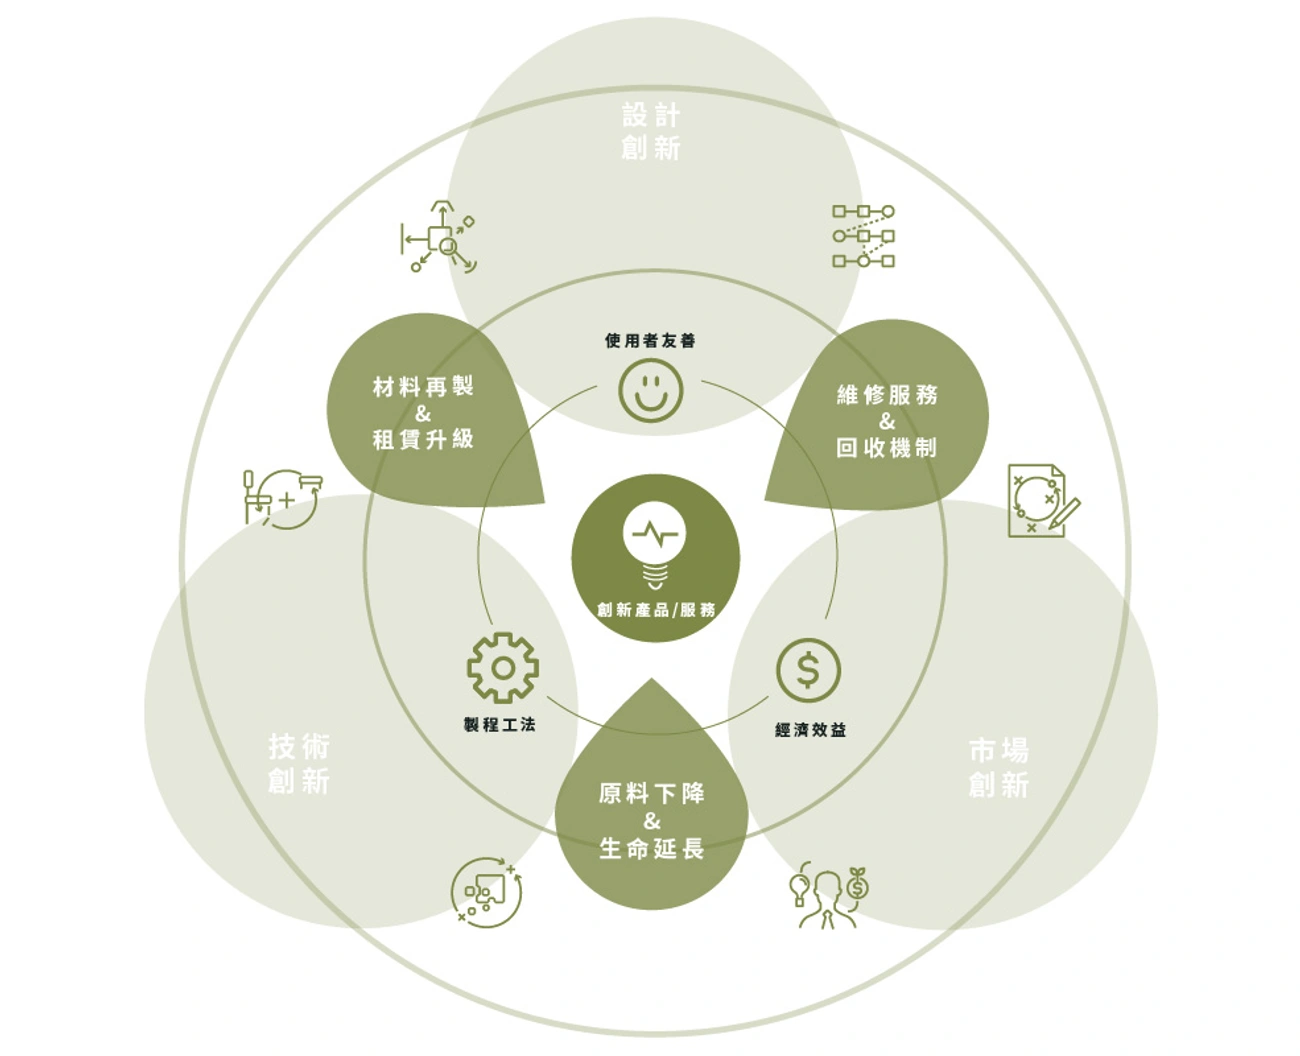 圖表由綠盒設計製作，循環經濟應整合技術、市場與設計，發揮多元創新合作價值
